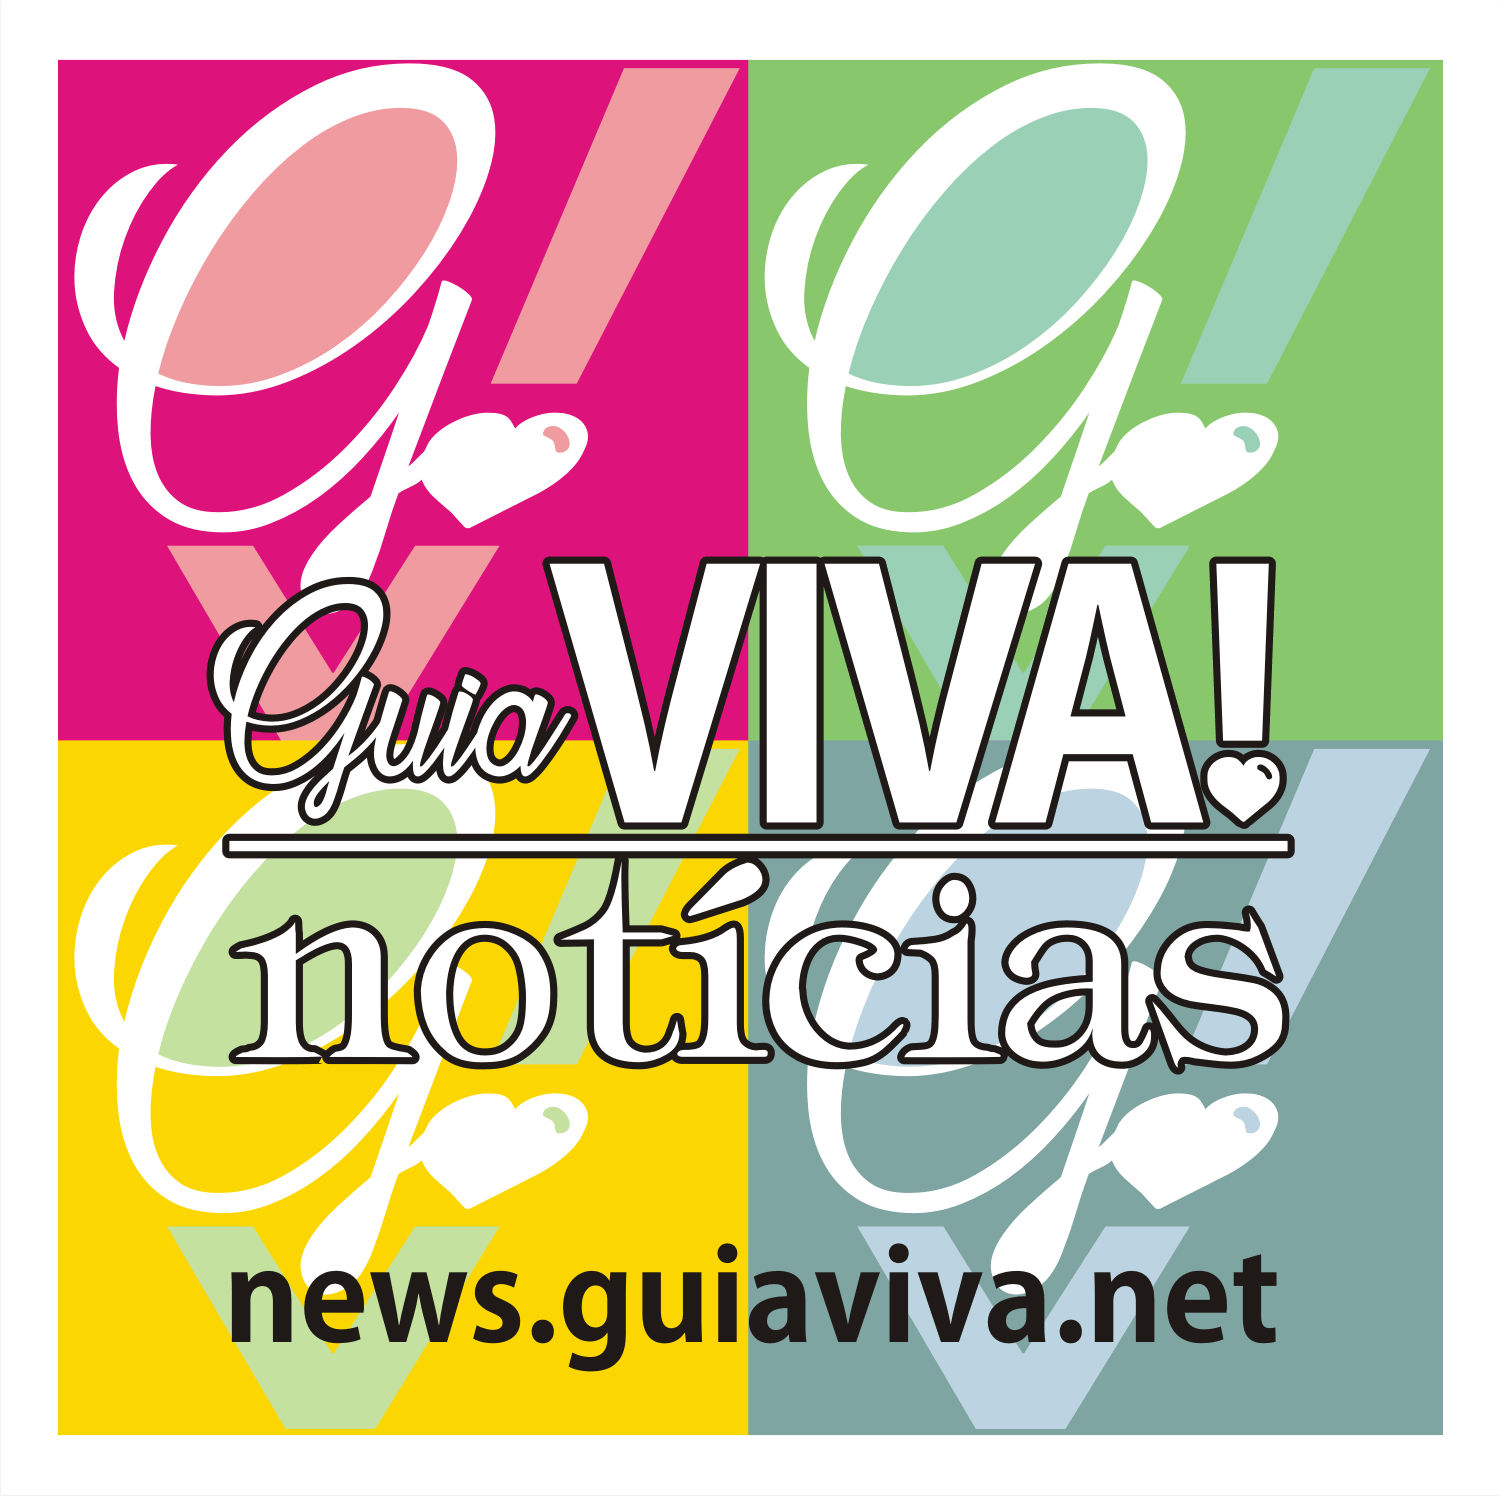 Guia Viva! Notícias Centro Histórico Porto Alegre